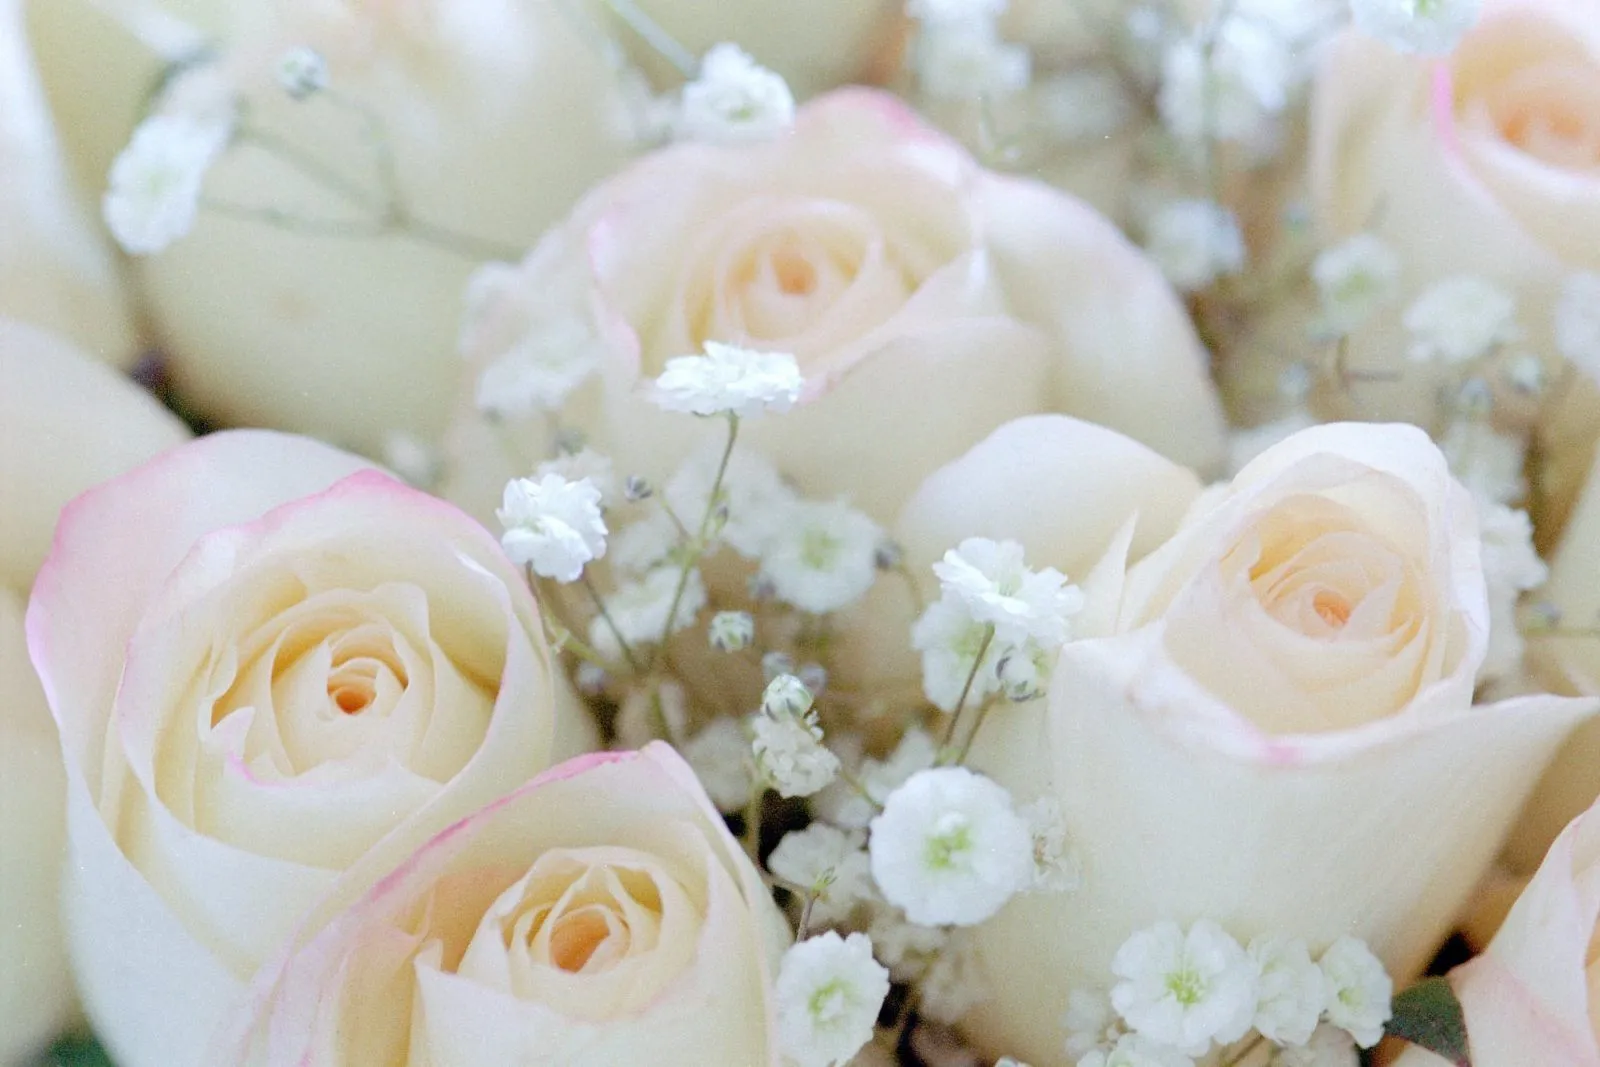 Rosas blancas de boda :: Imágenes y fotos